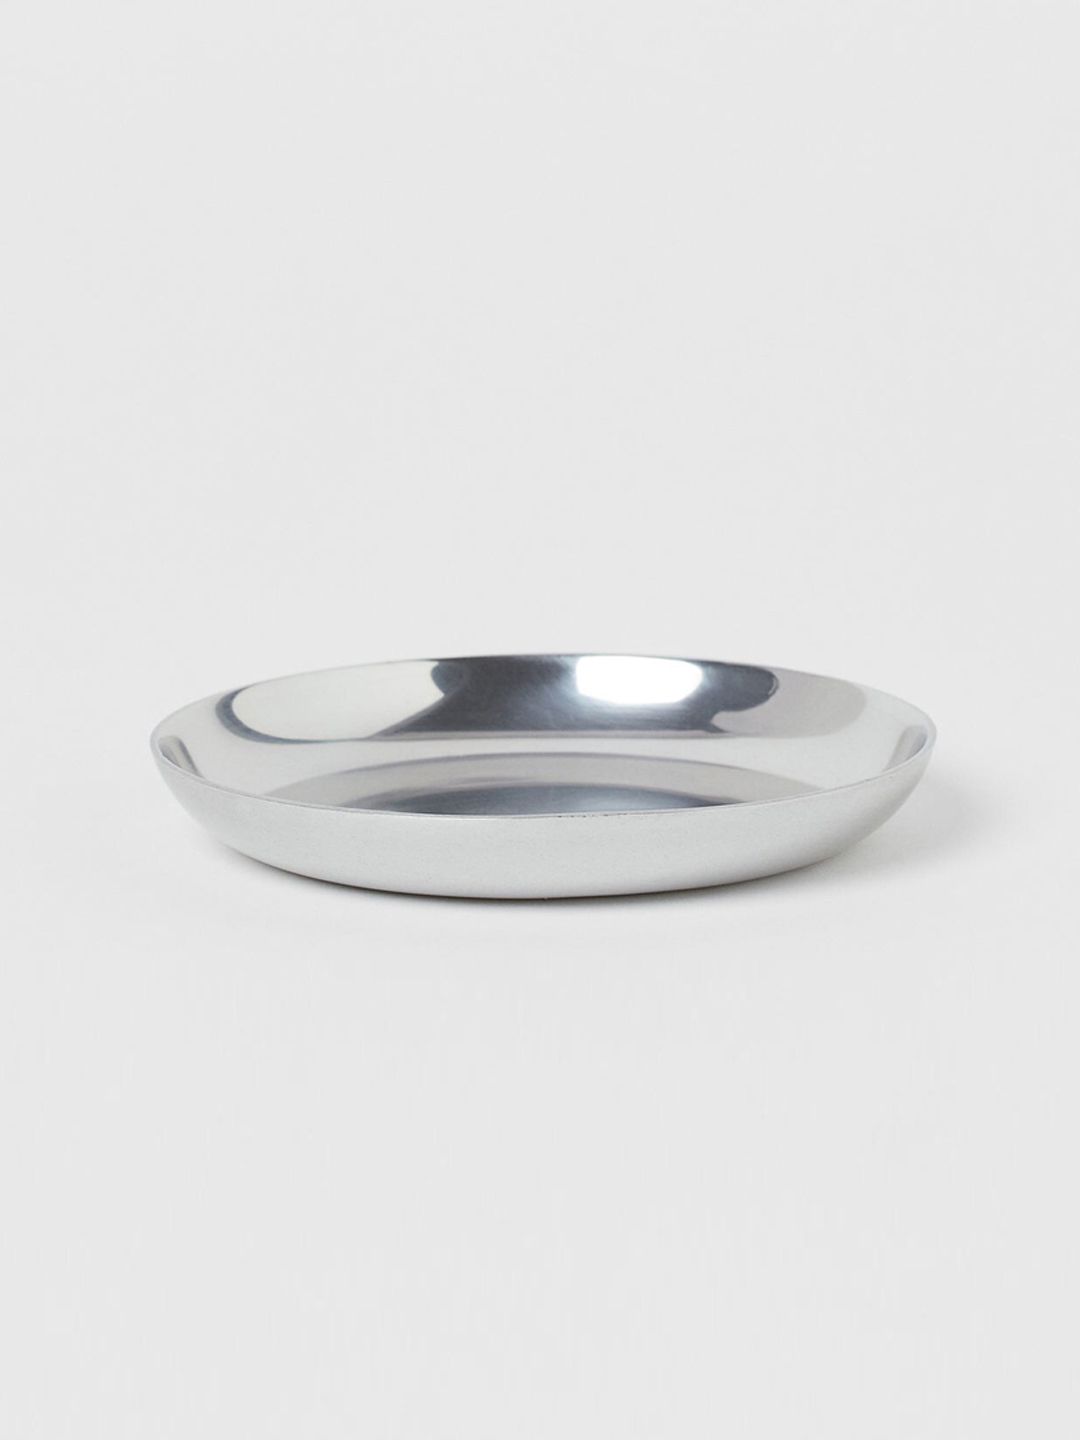 H&M Silver-Toned Metal Mini Dish Price in India